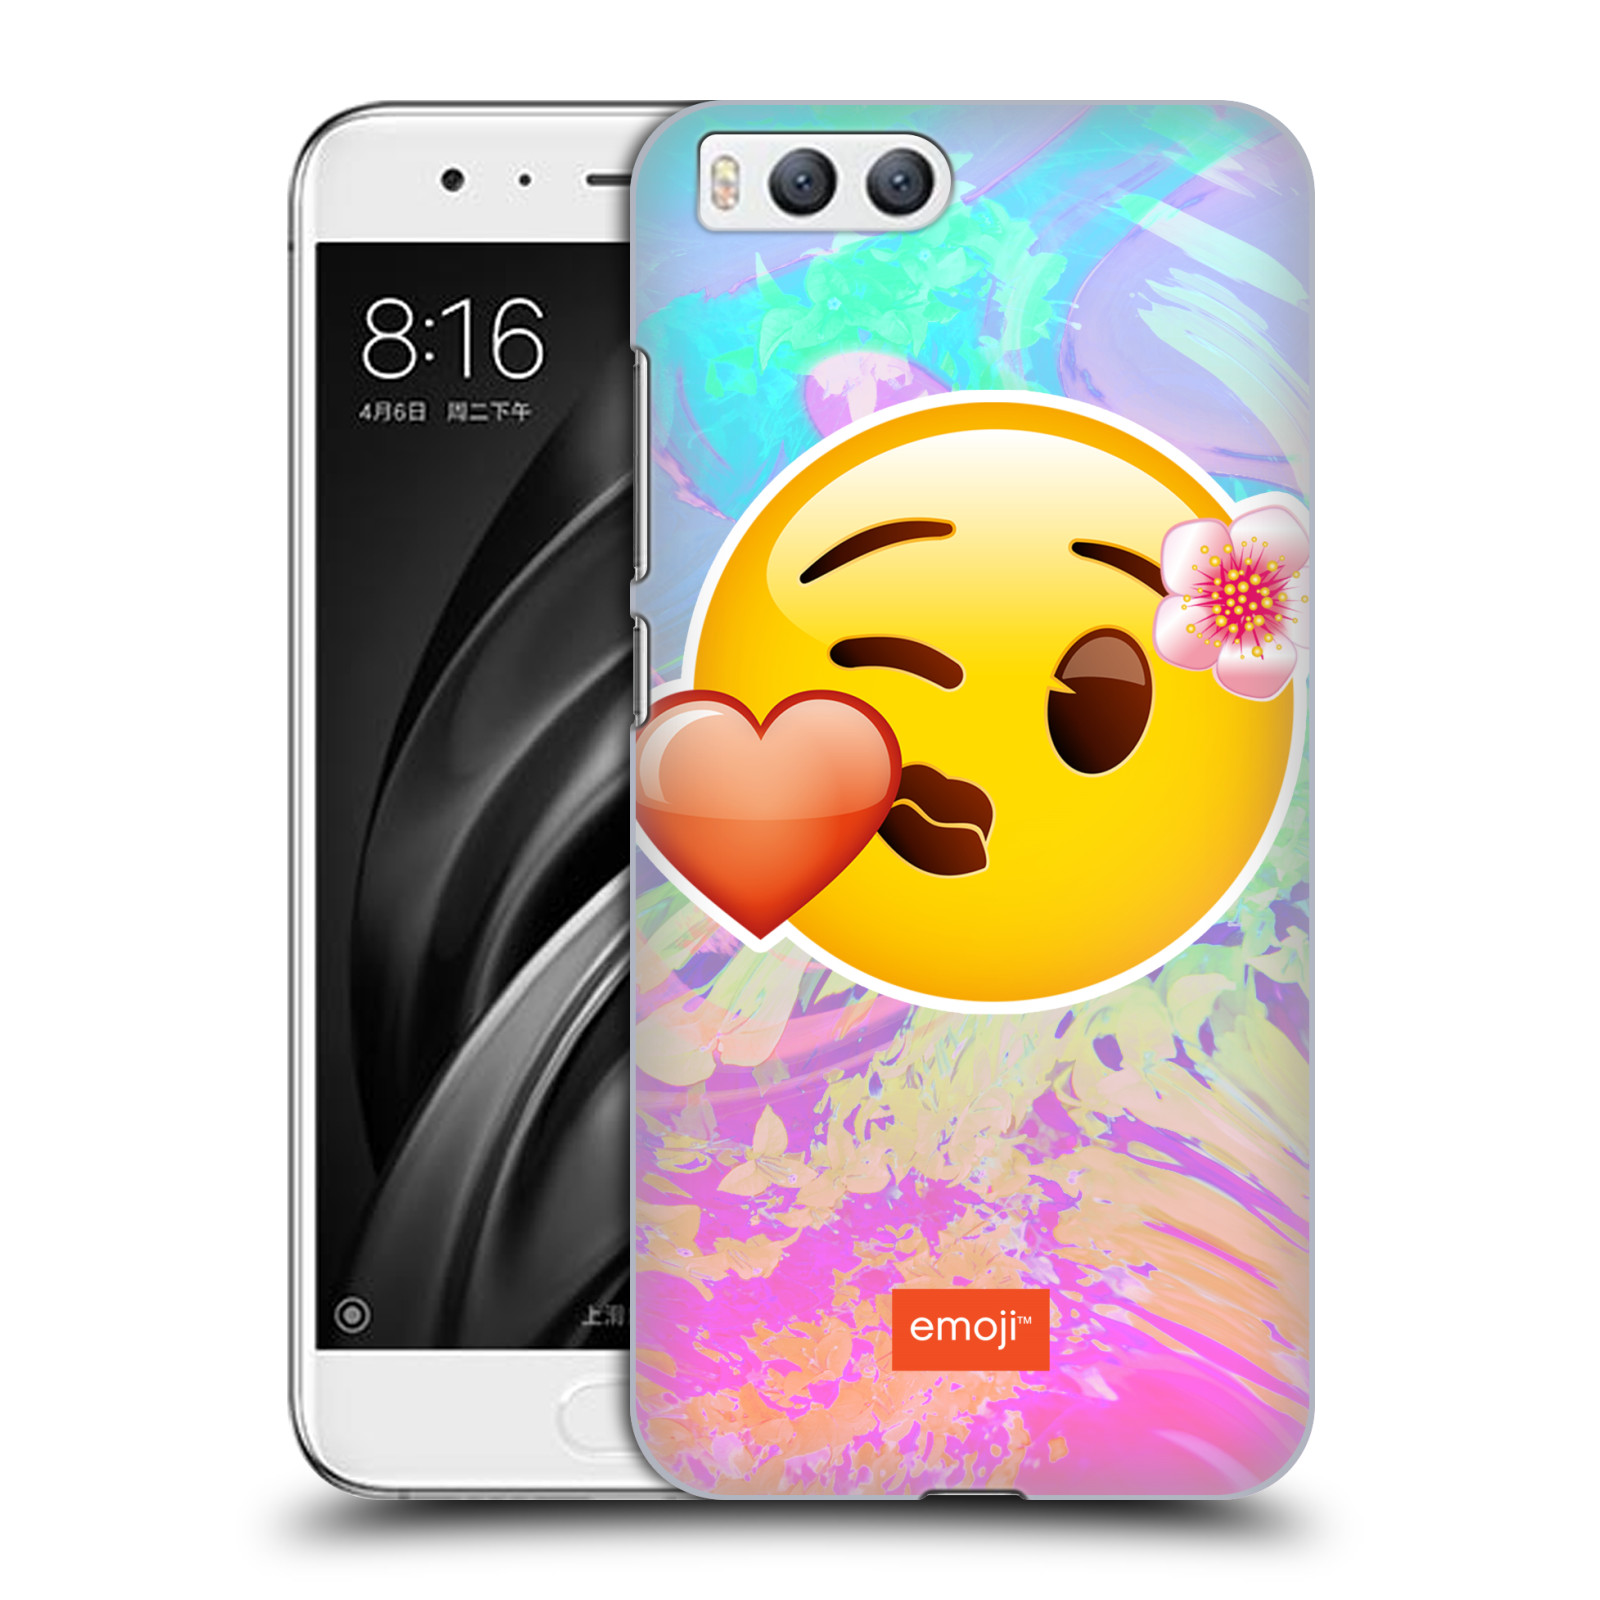 Pouzdro na mobil Xiaomi MI6 - HEAD CASE - Emoji smajlík pusinka